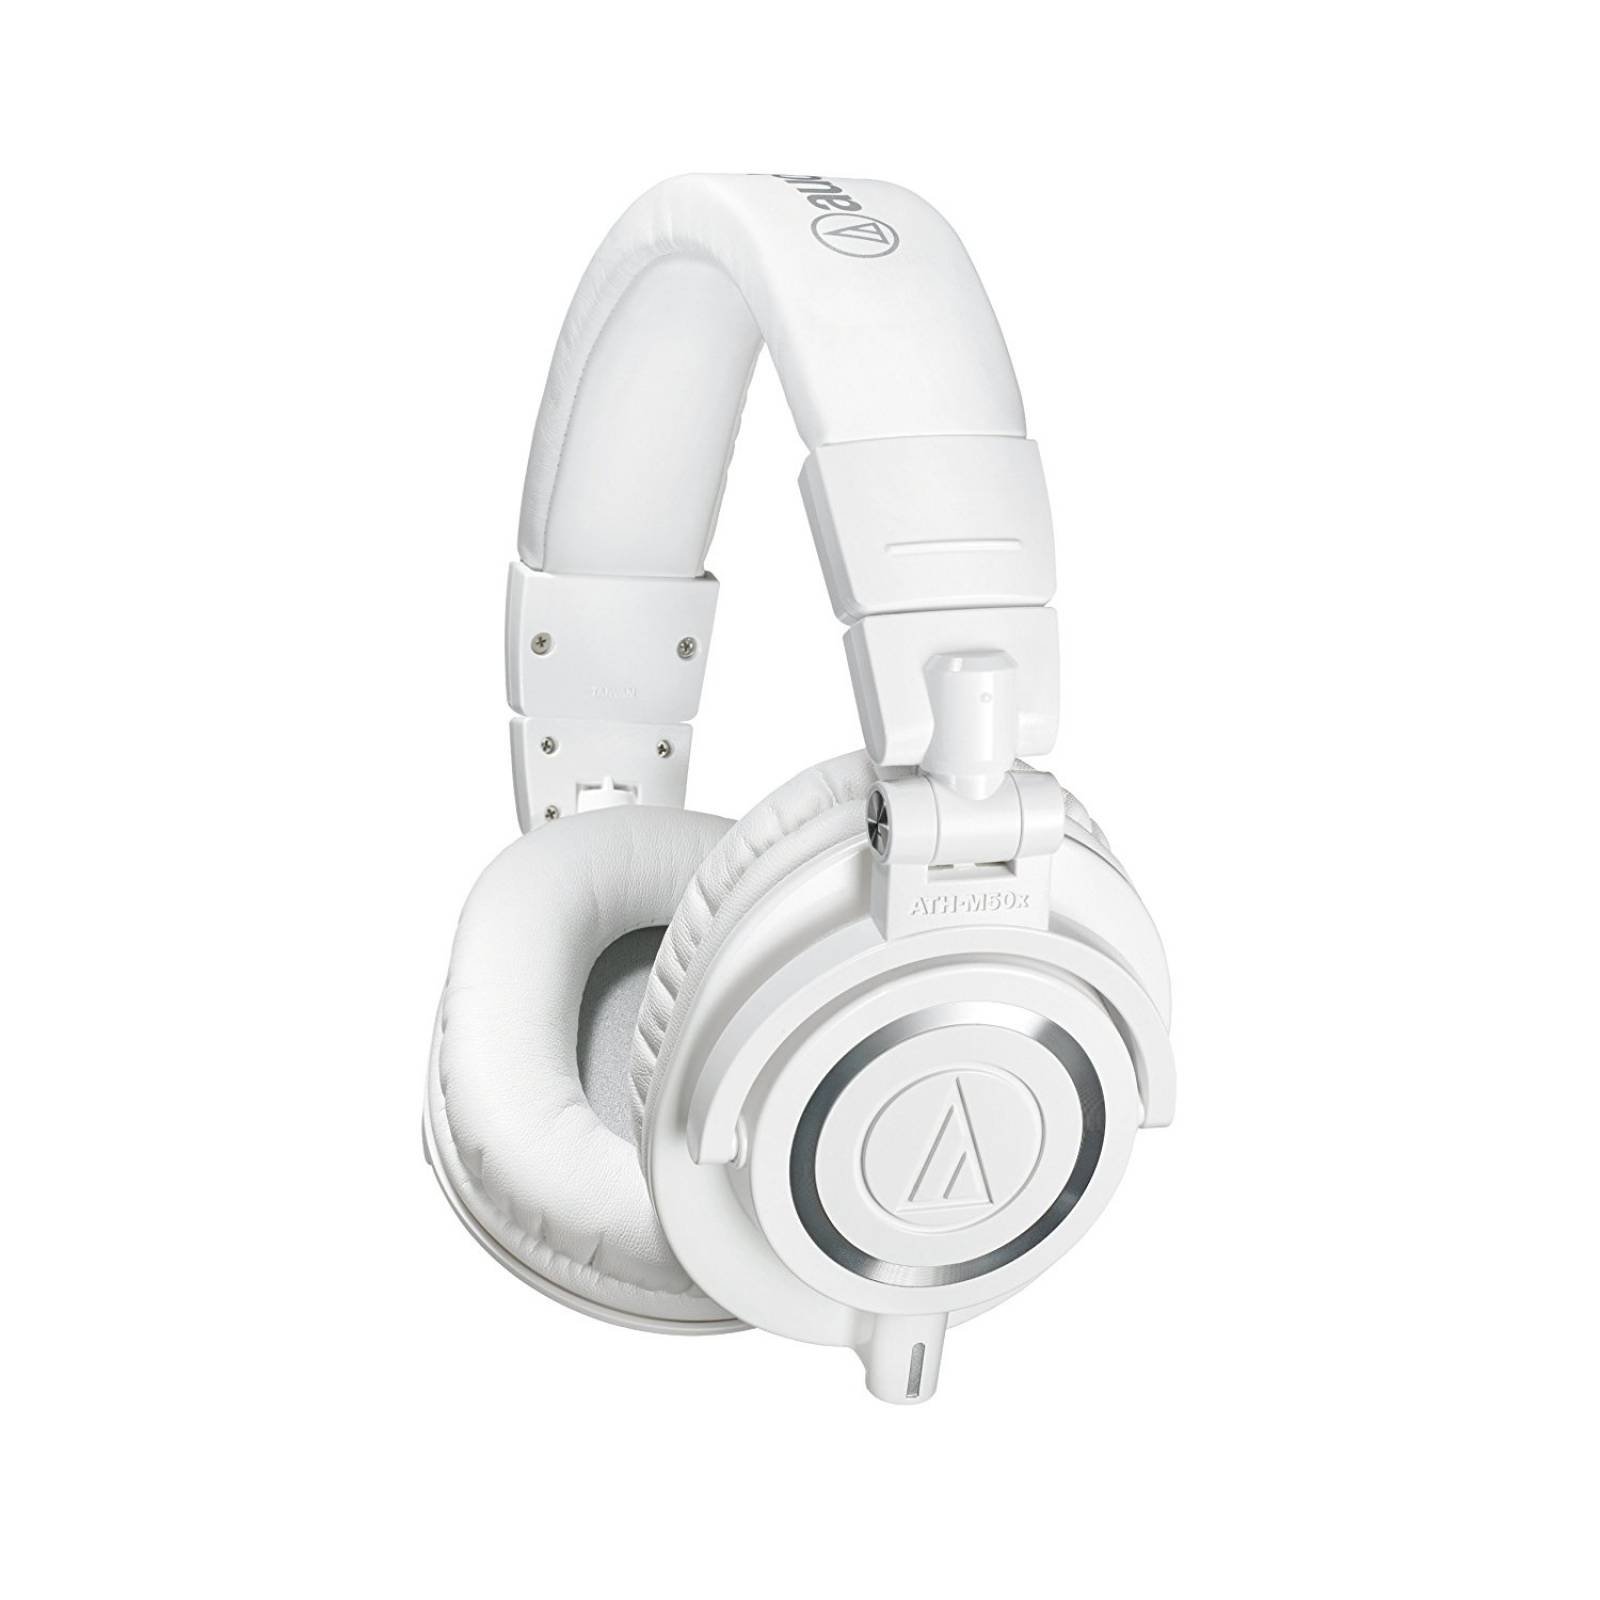 B:Audio-Technica ATH-M50x auriculares Monitor estudio profesio